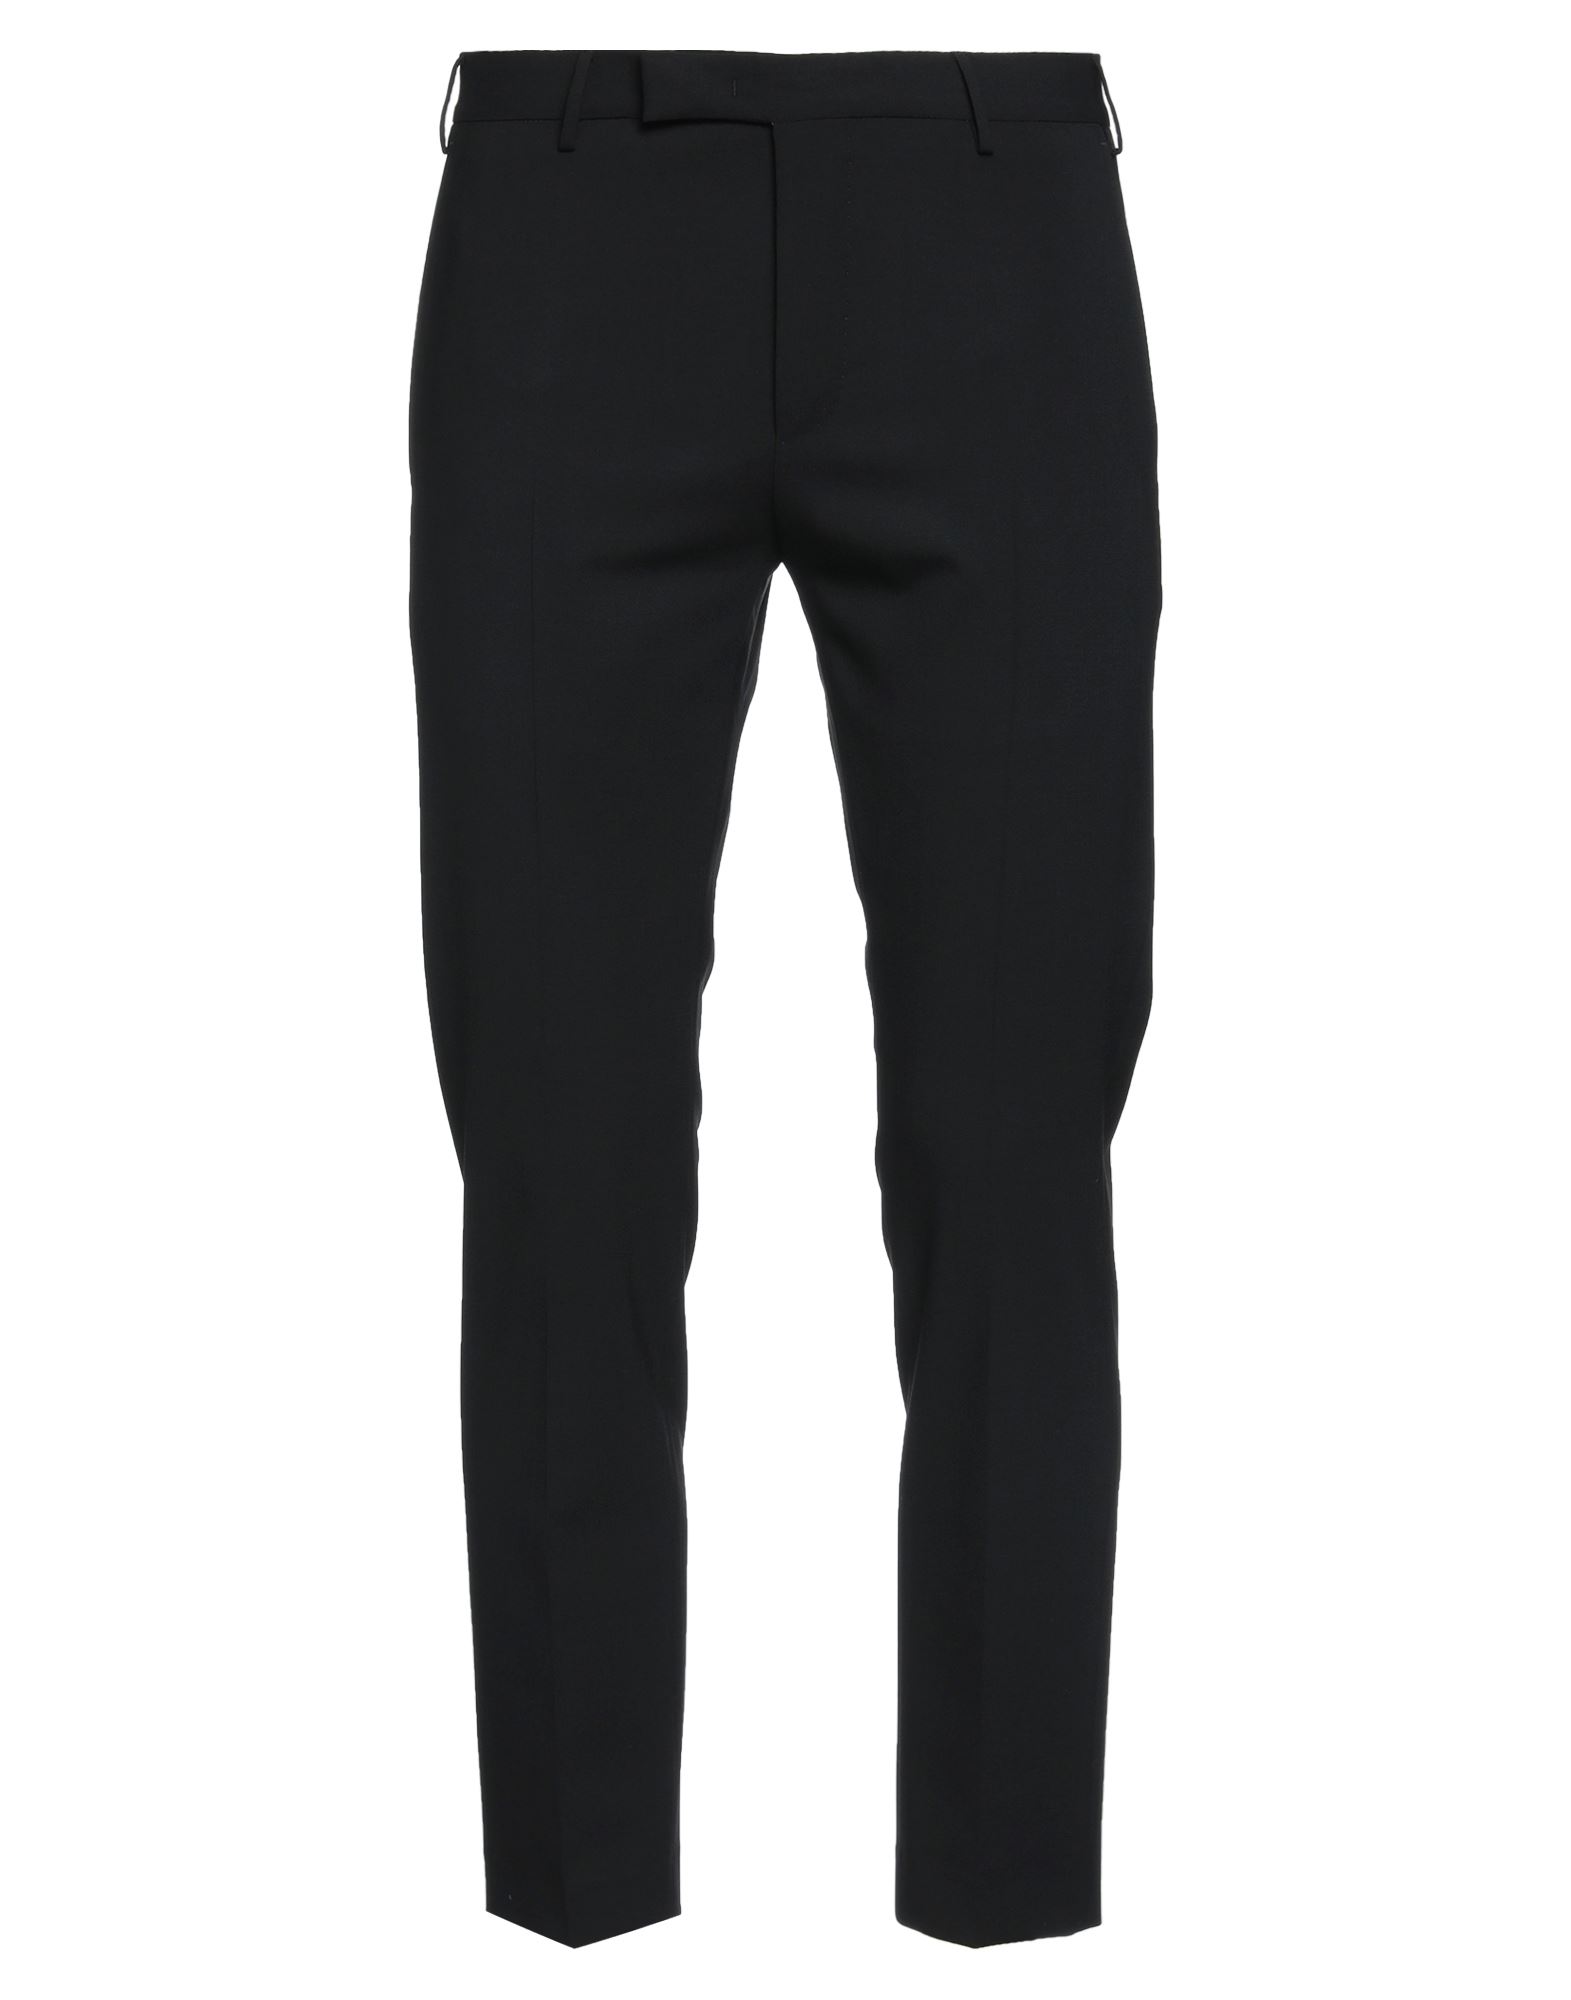 Pt Torino Man Pants Black Size 40 Polyester, Virgin Wool